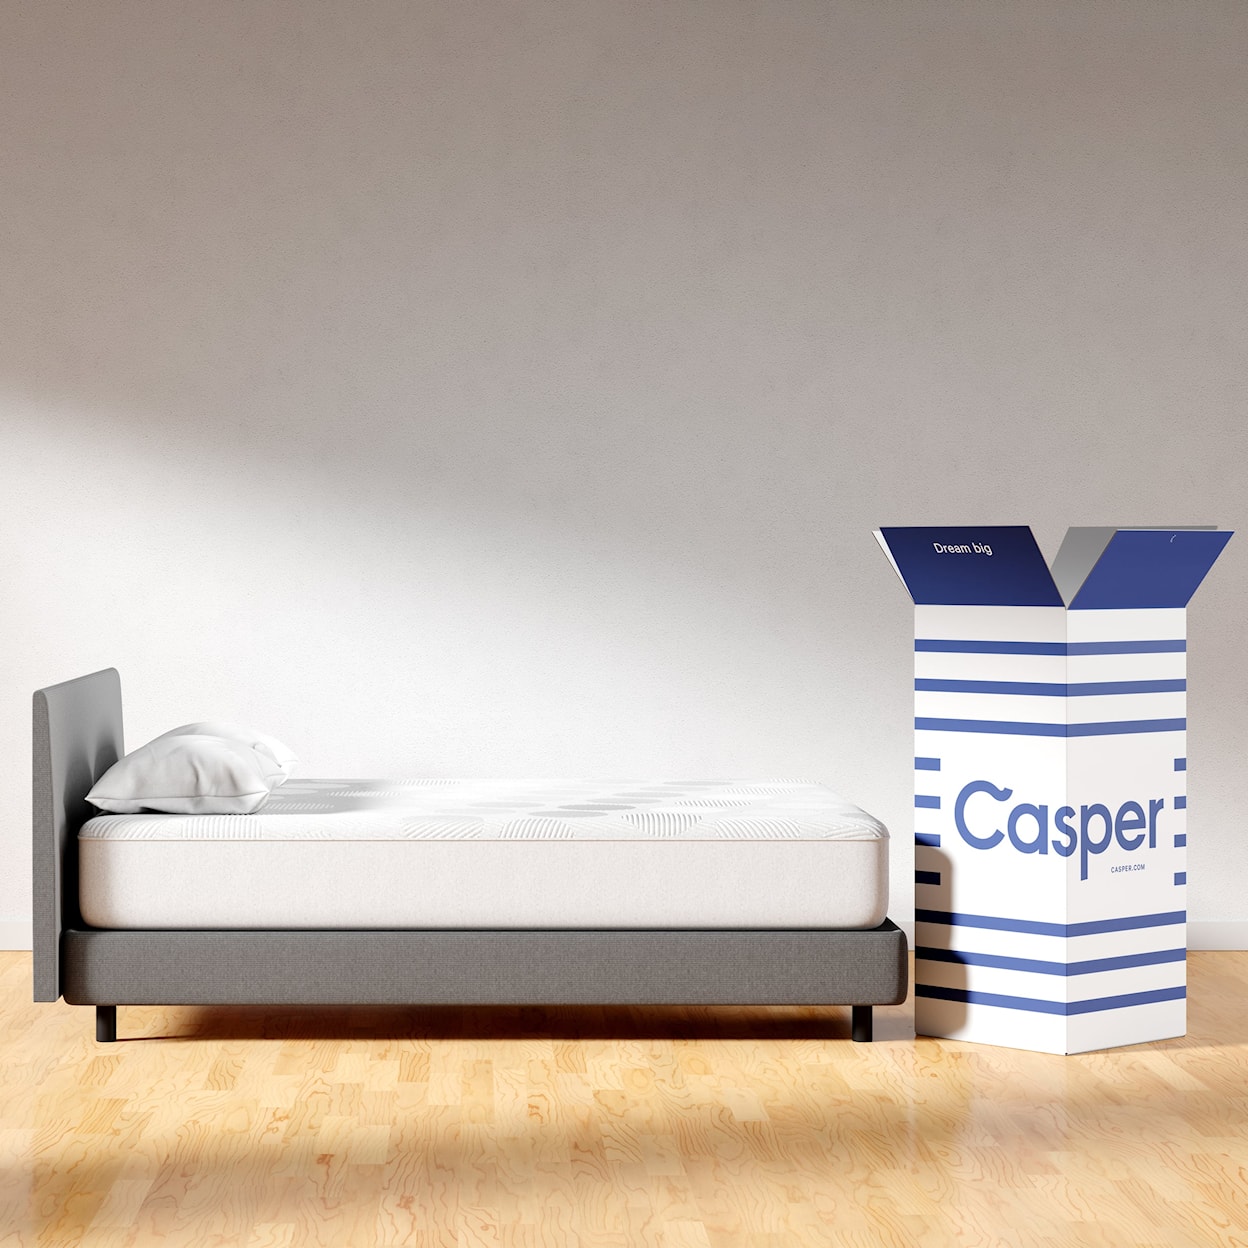 Casper Casper 11" Hybrid Queen Hybrid Mattress